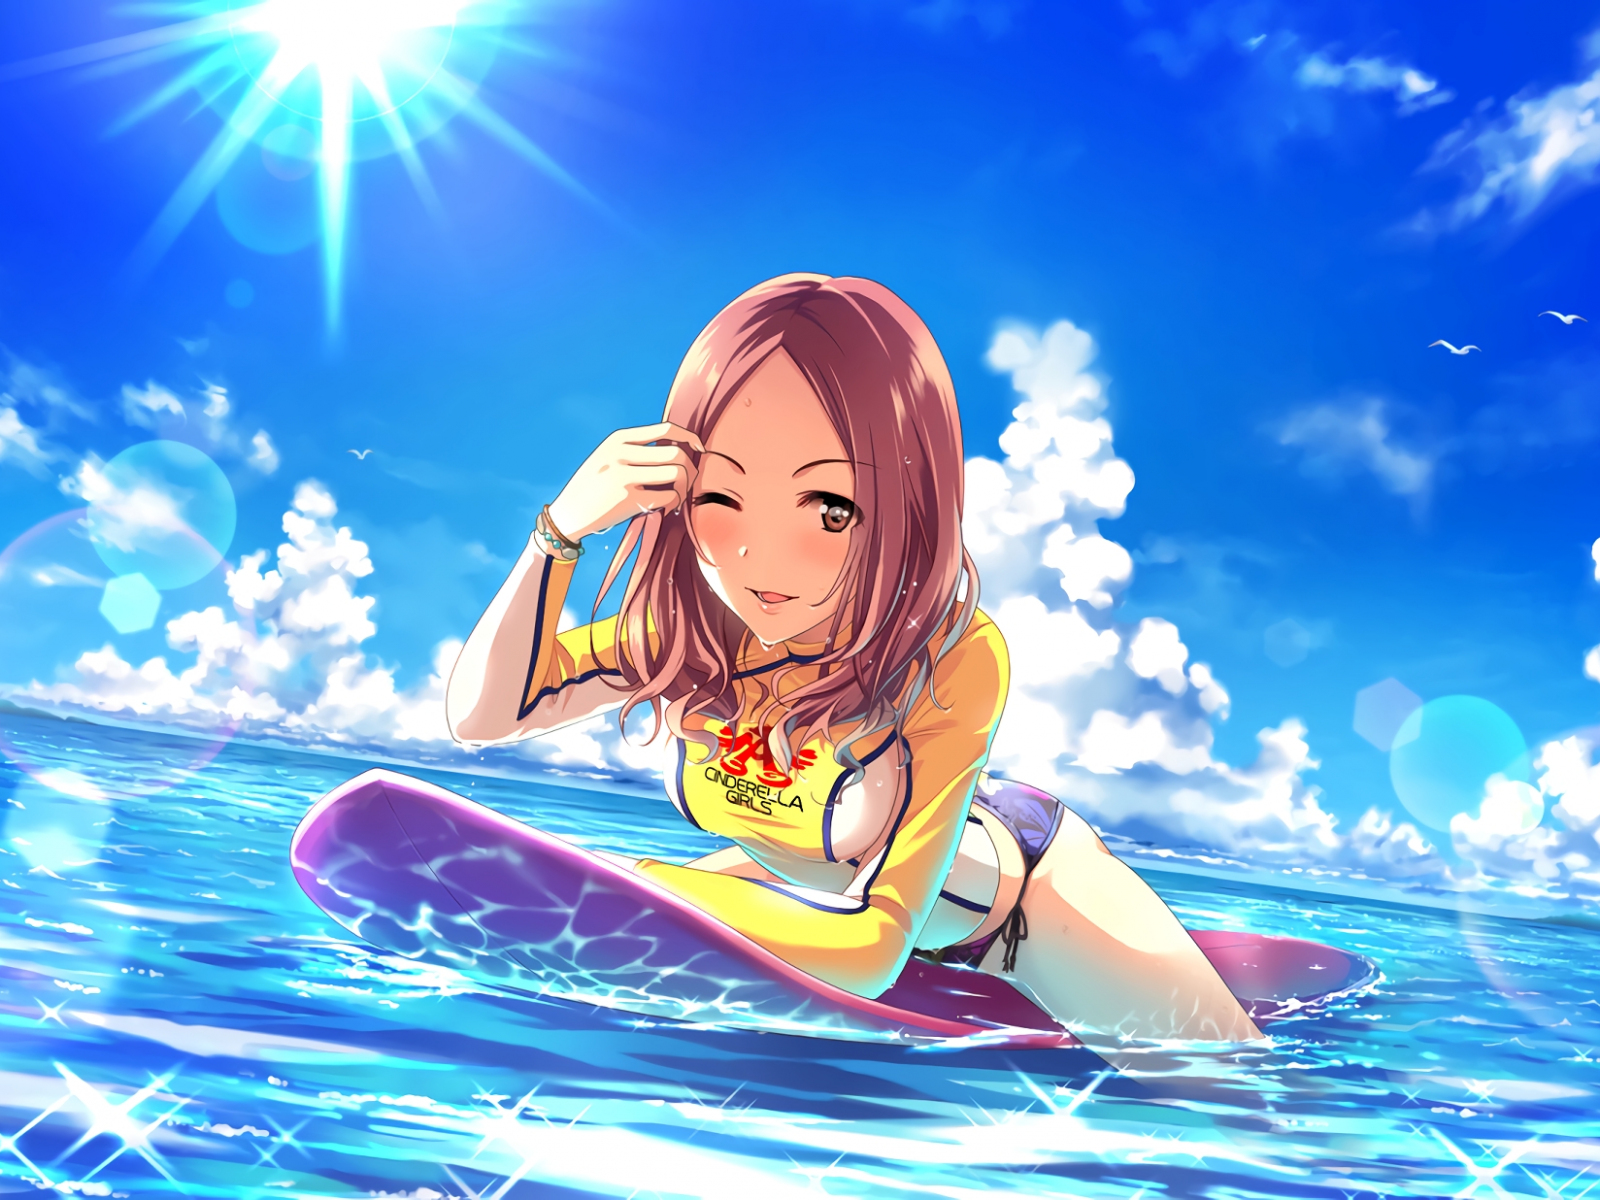 Desktop Wallpaper Marina Sawada, Surfer, Anime Girl, HD Image, Picture, Background, V21tli